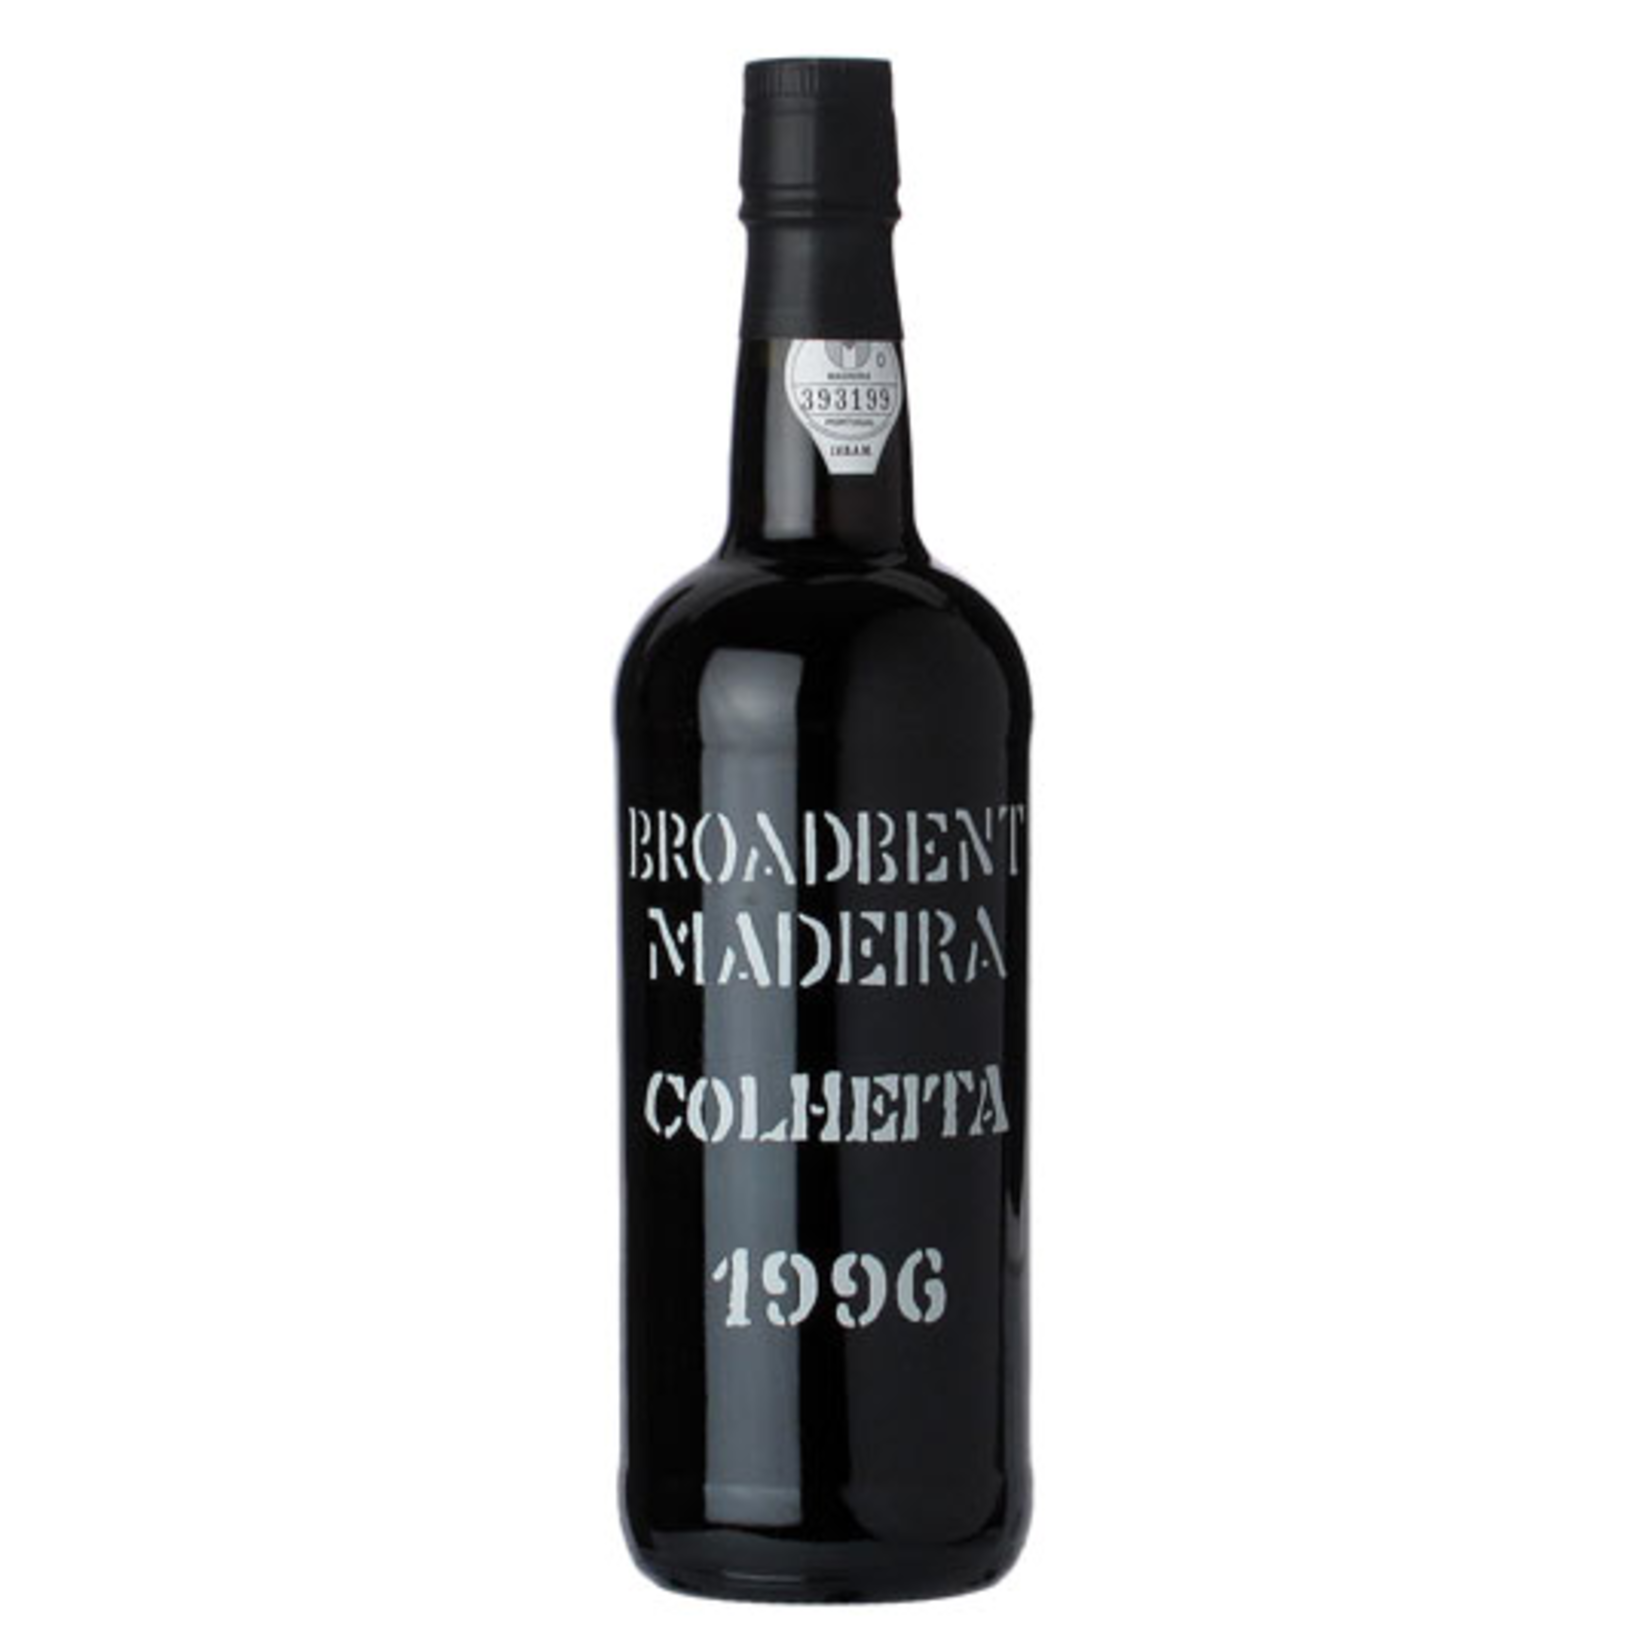 1999, Broadbent Colheita, Madeira, Sta. Cruz, Madeira, Portugal, 19% Alc, CT92, TW93